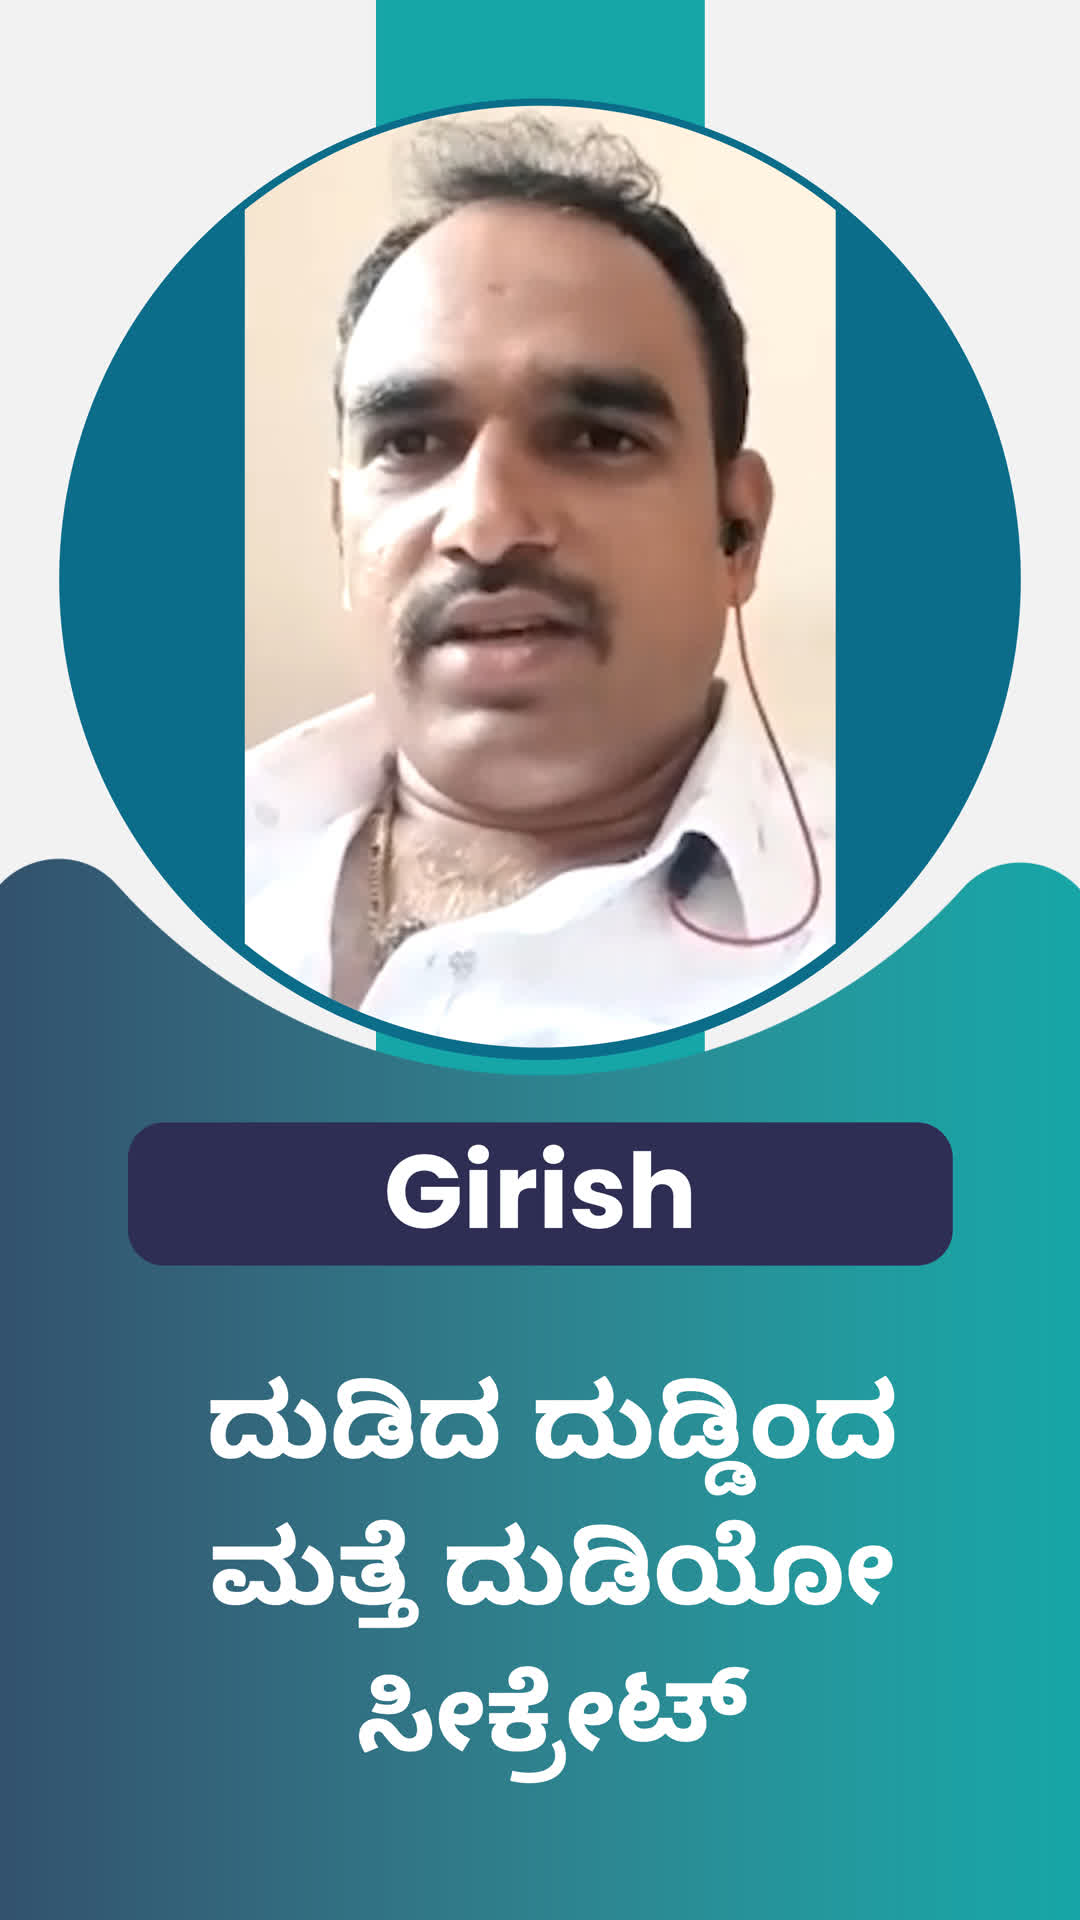 Girish's Honest Review of ffreedom app - Ramanagara ,Karnataka